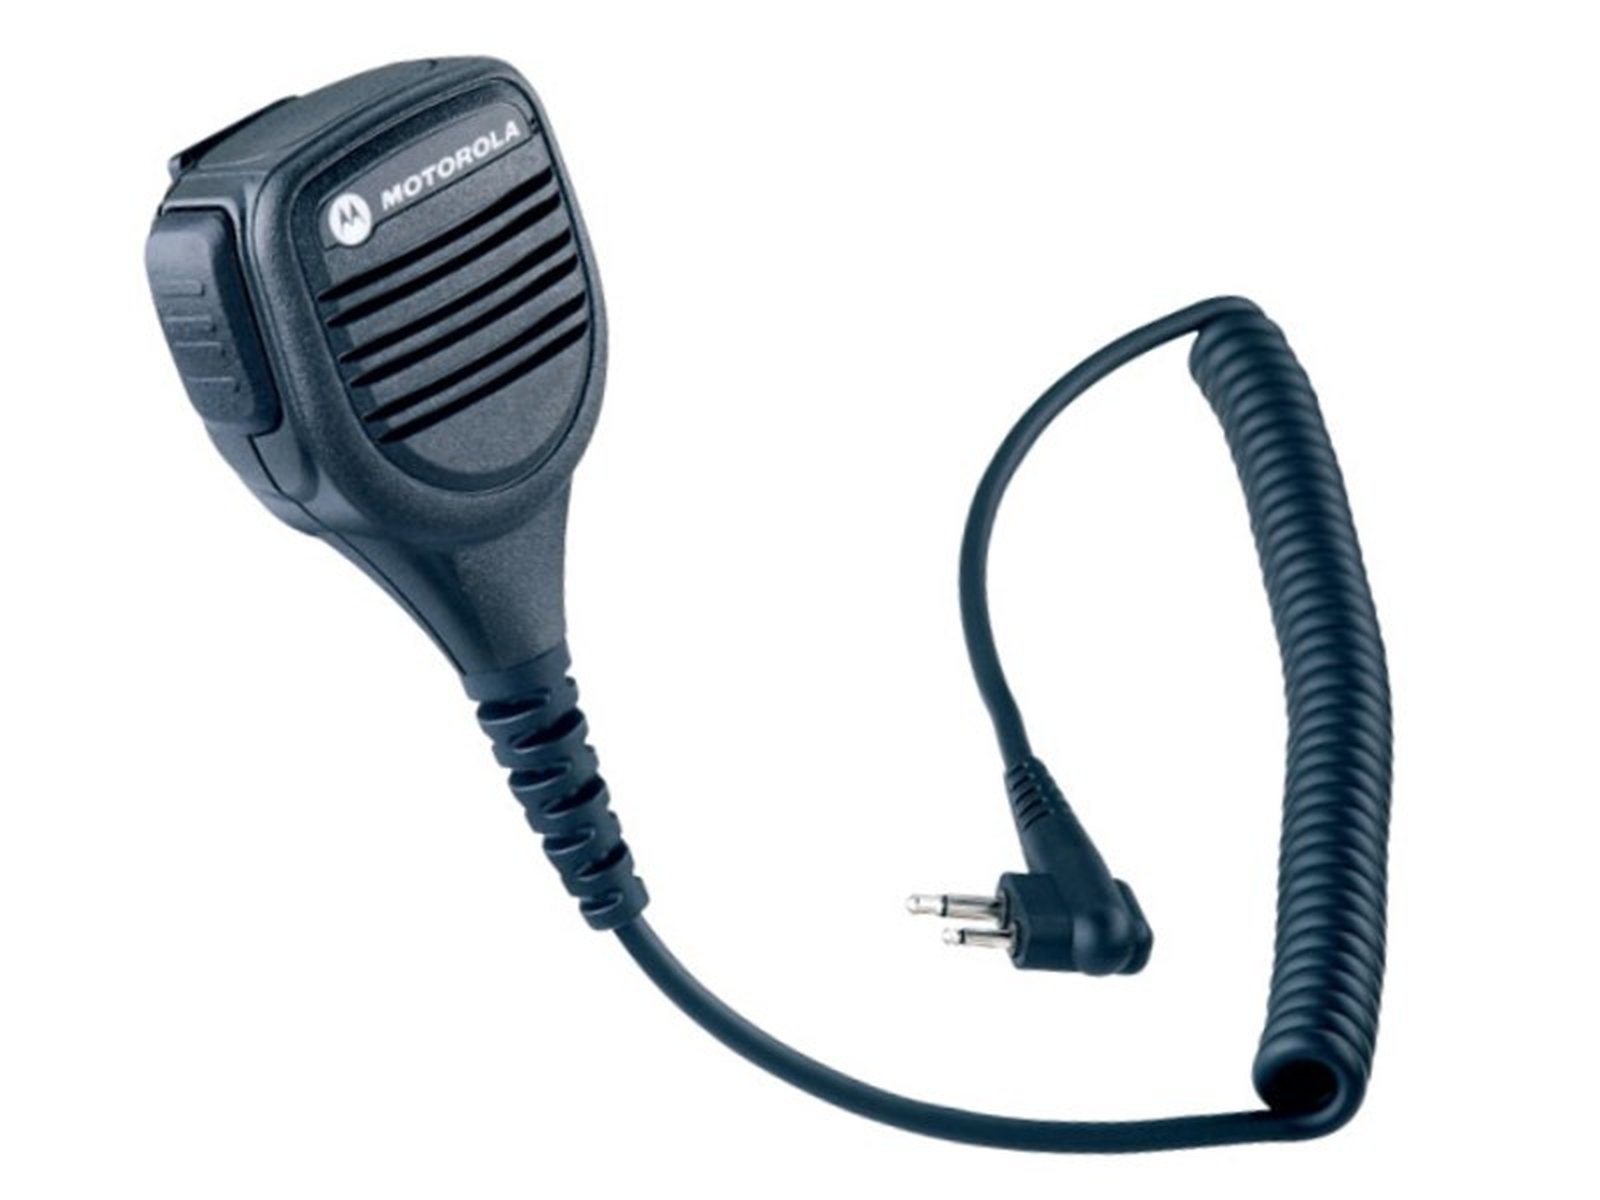 Motorola PMMN4029A Lautsprechermikrofon